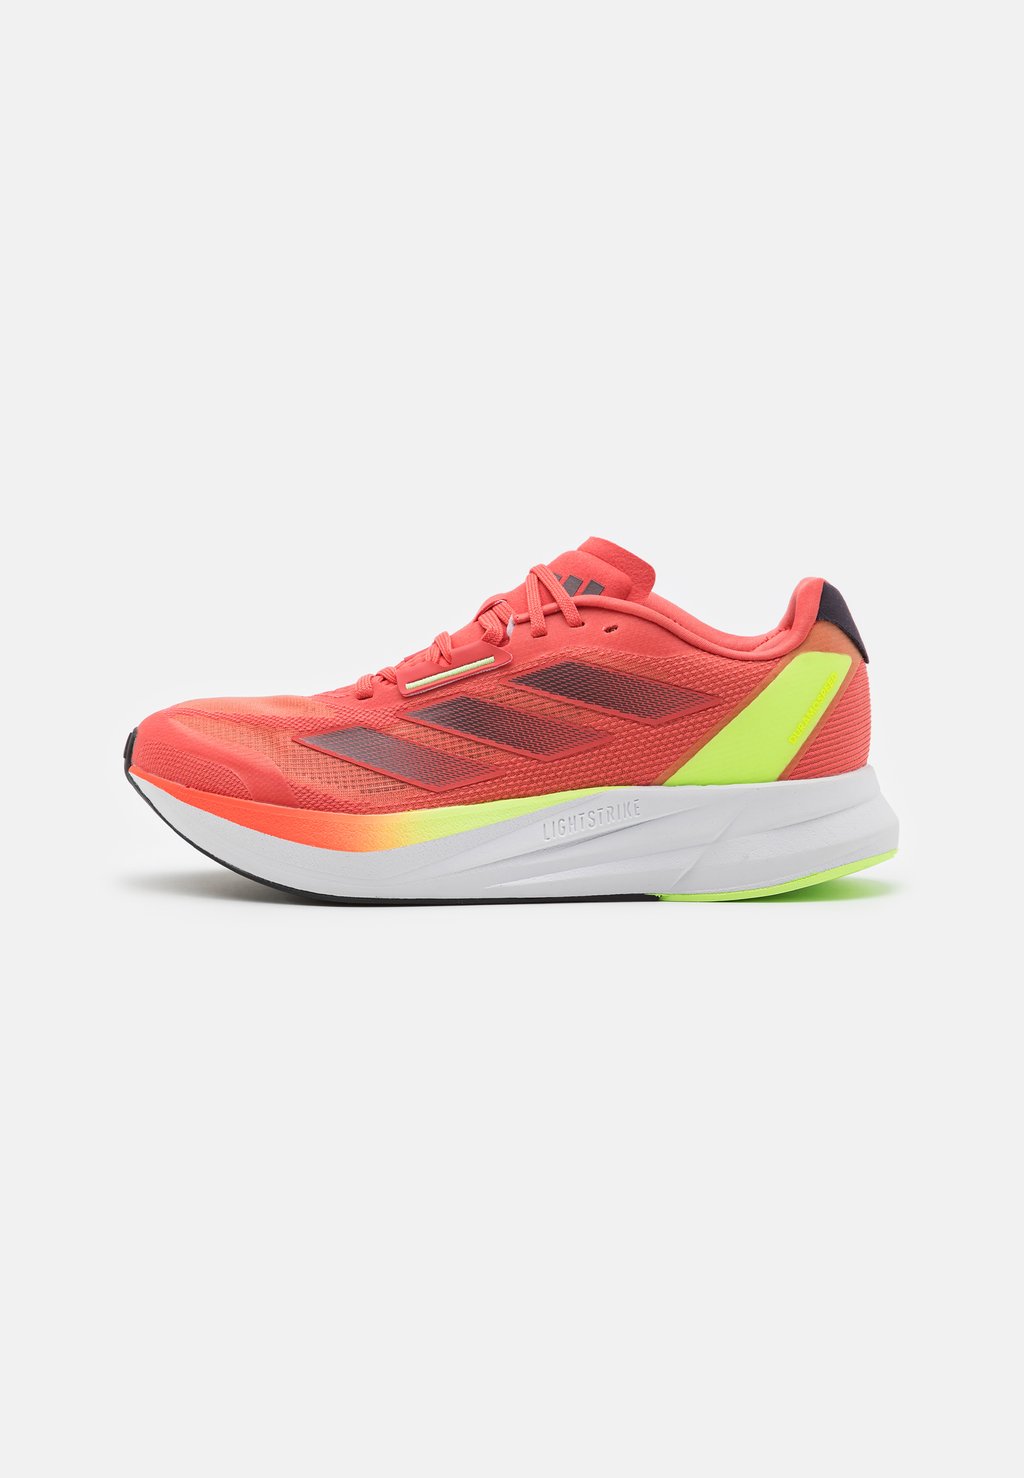 Нейтральные кроссовки Duramo Speed Adidas, цвет preloved scarlet/aurora metallic/solar red